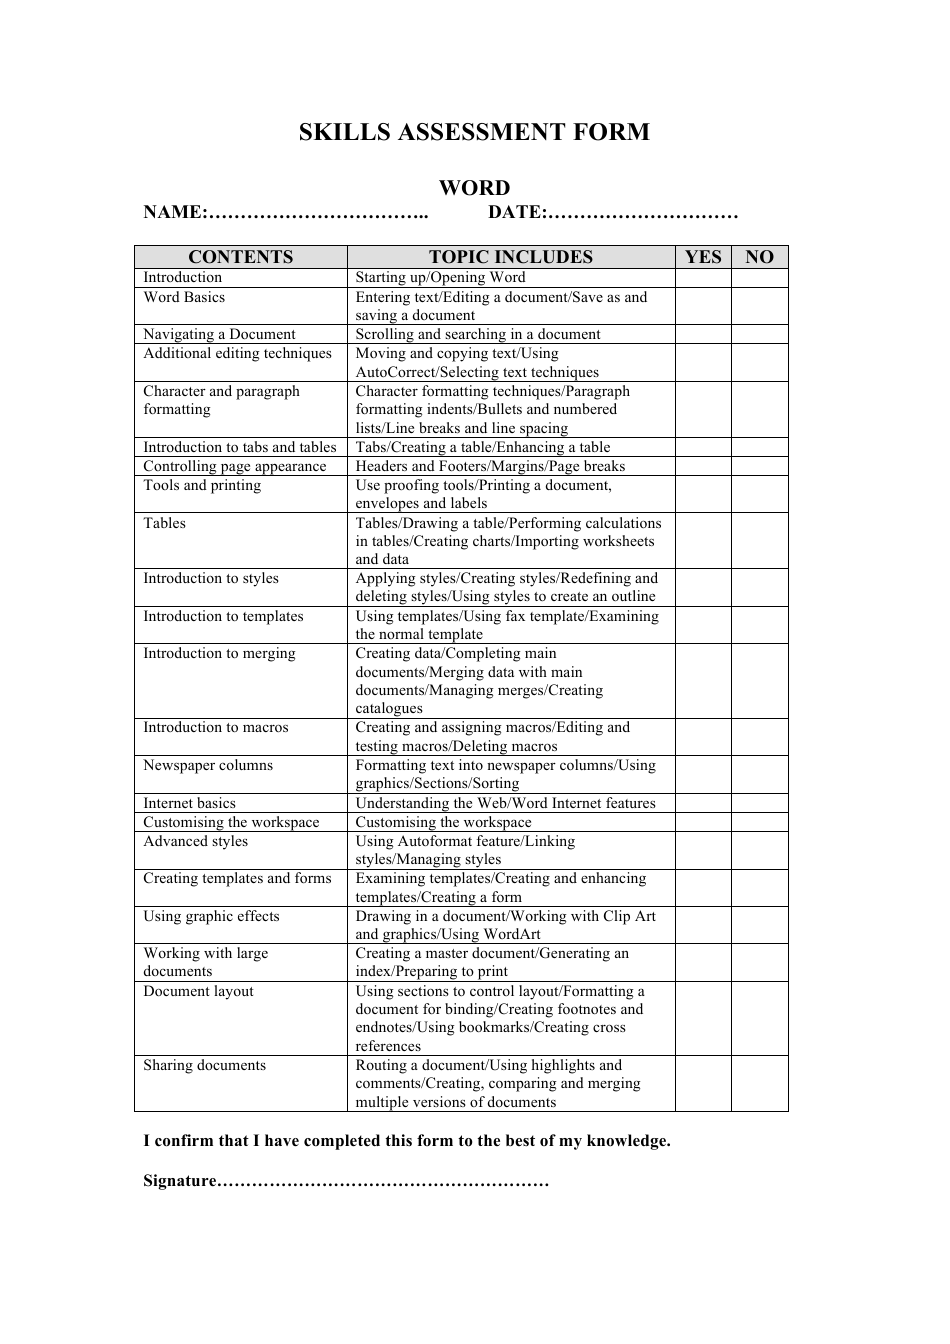 skills-assessment-form-download-printable-pdf-templateroller